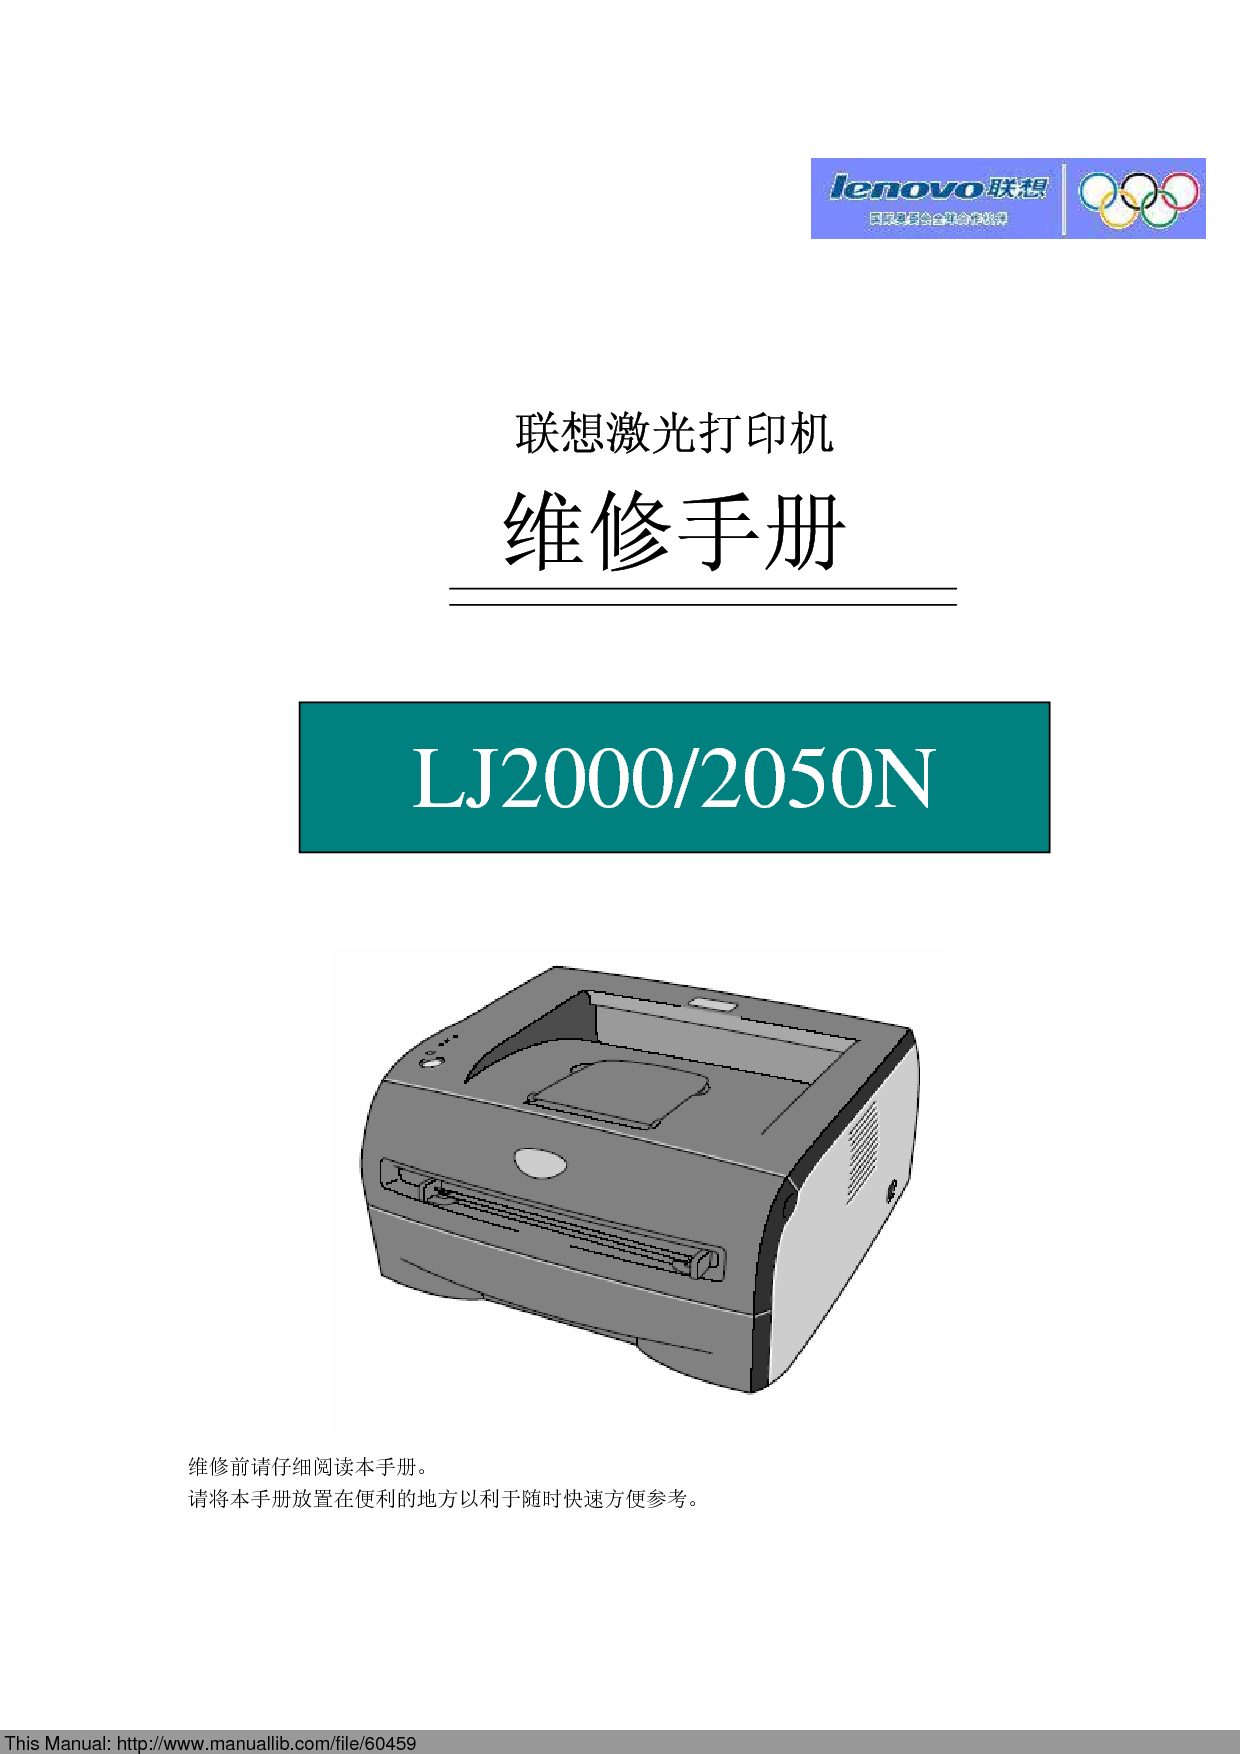 联想 Lenovo LJ2000 维修服务手册 封面